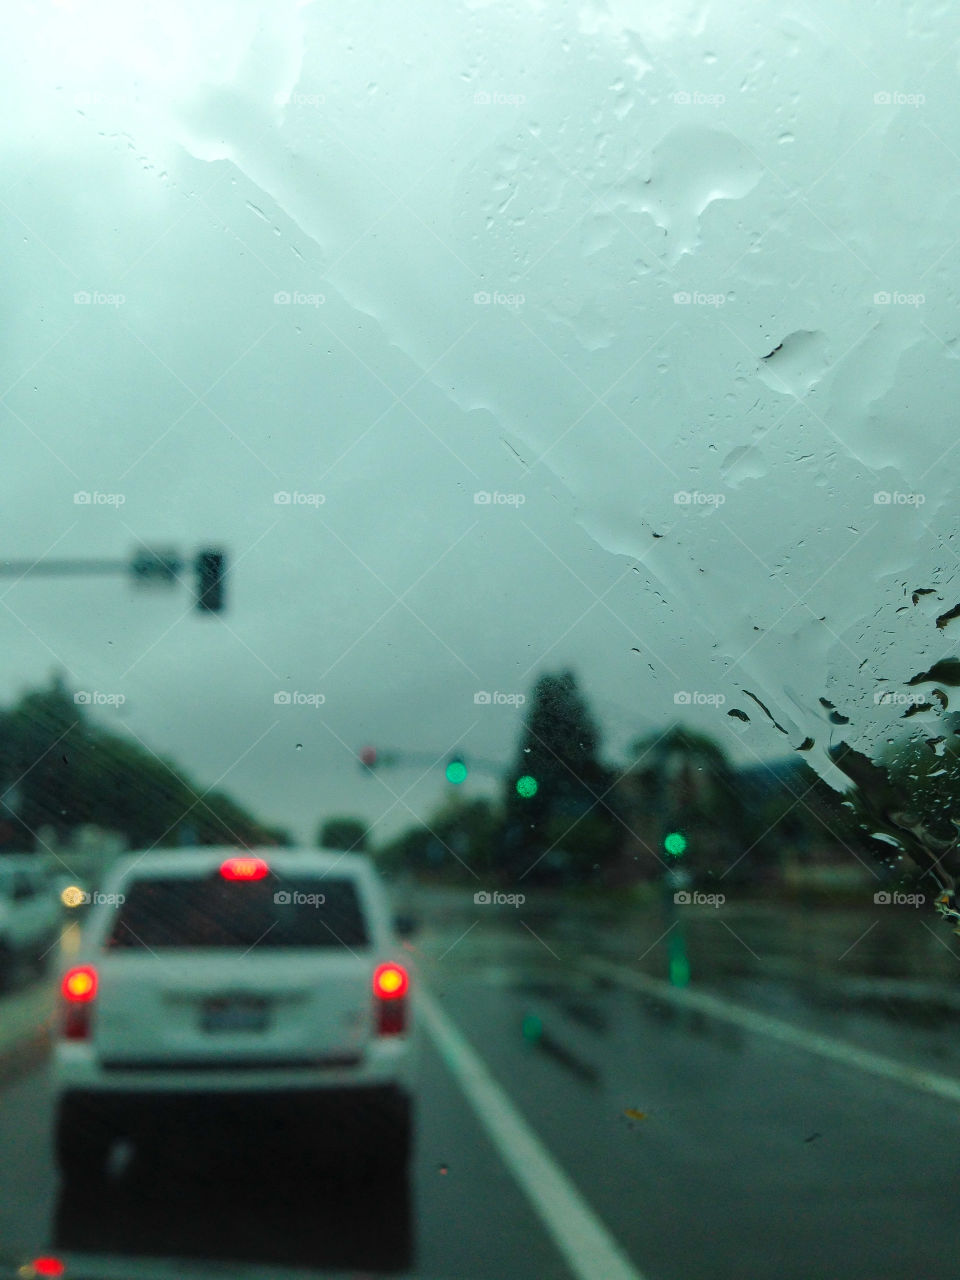 In the Rain. Rain on a car windshield.